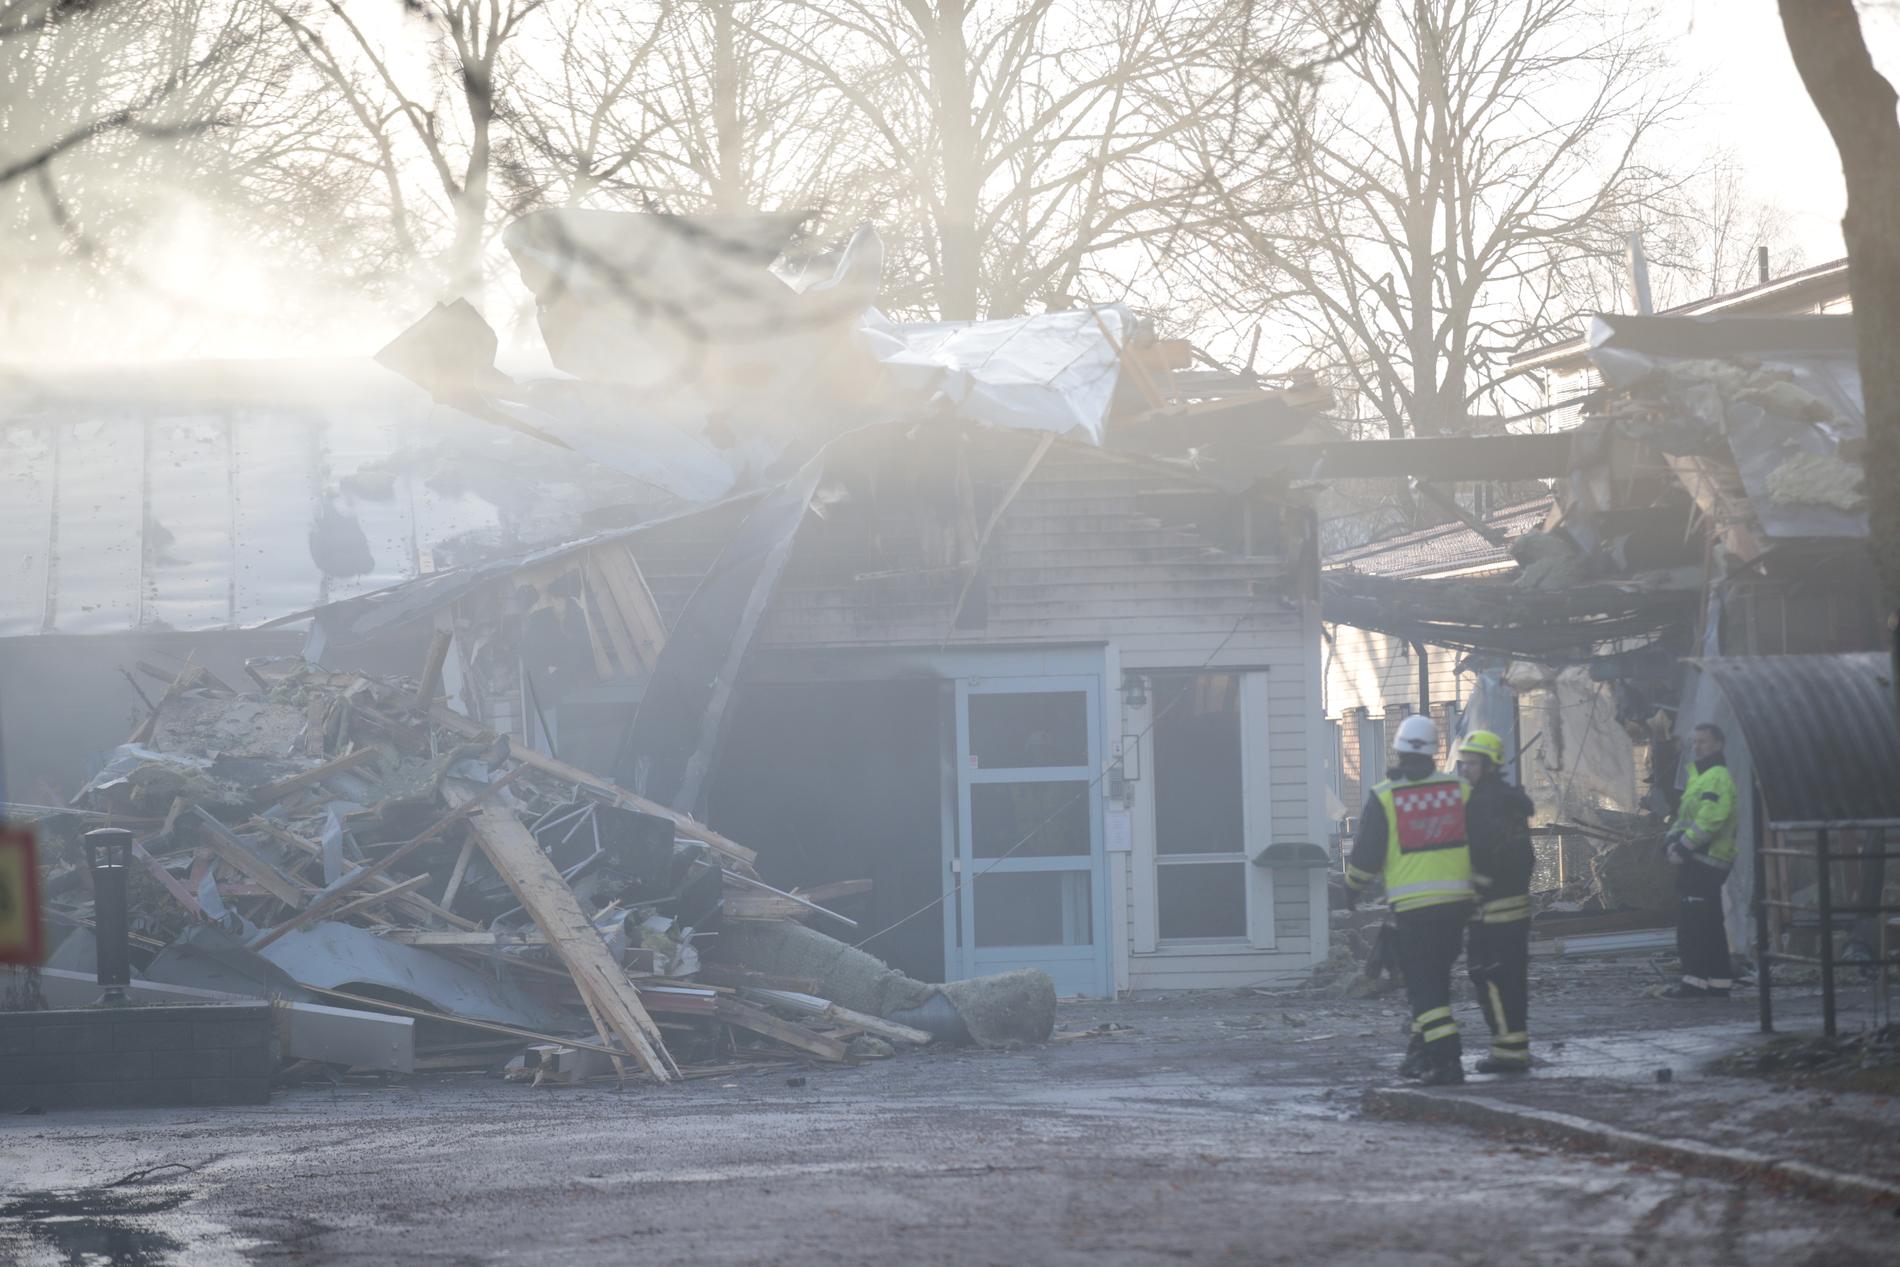 Äldreboendet Allégården i Tibro blev delvis förstört av en nattlig brand i januari. Nu pekar räddningstjänstens utredning på brister i brandskyddet.